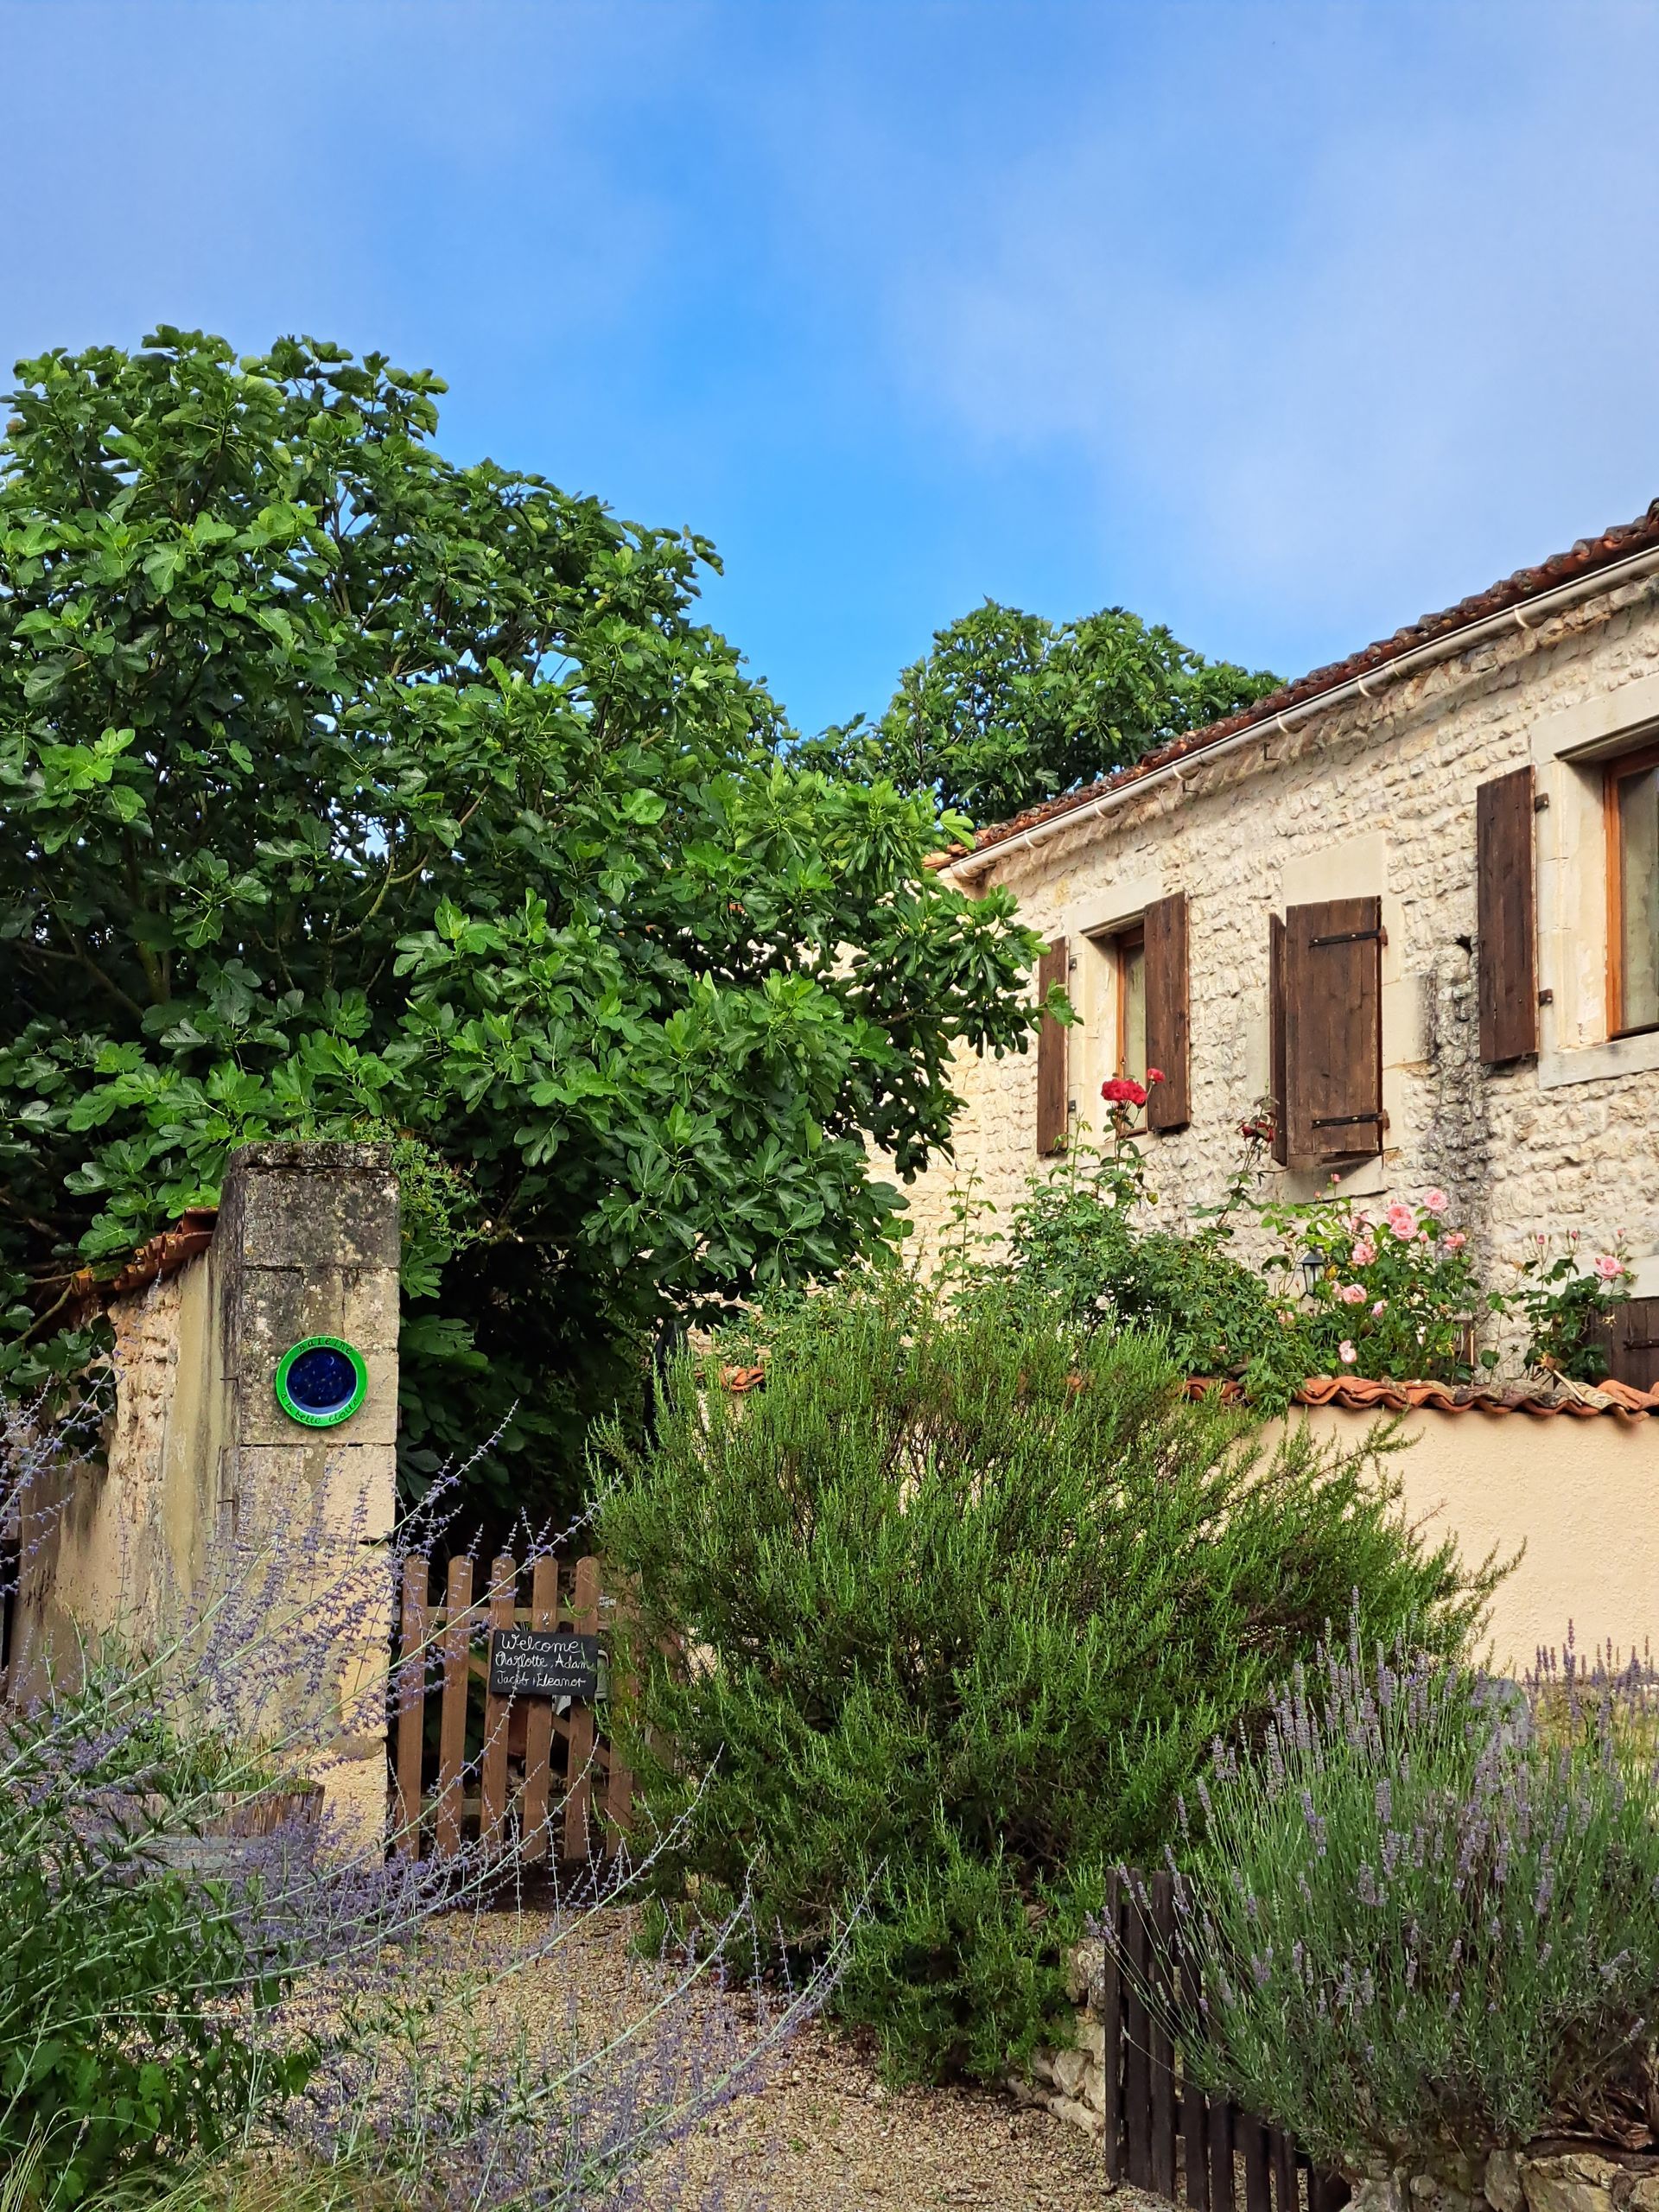 stenen huisje in Frankrijk met houten luiken